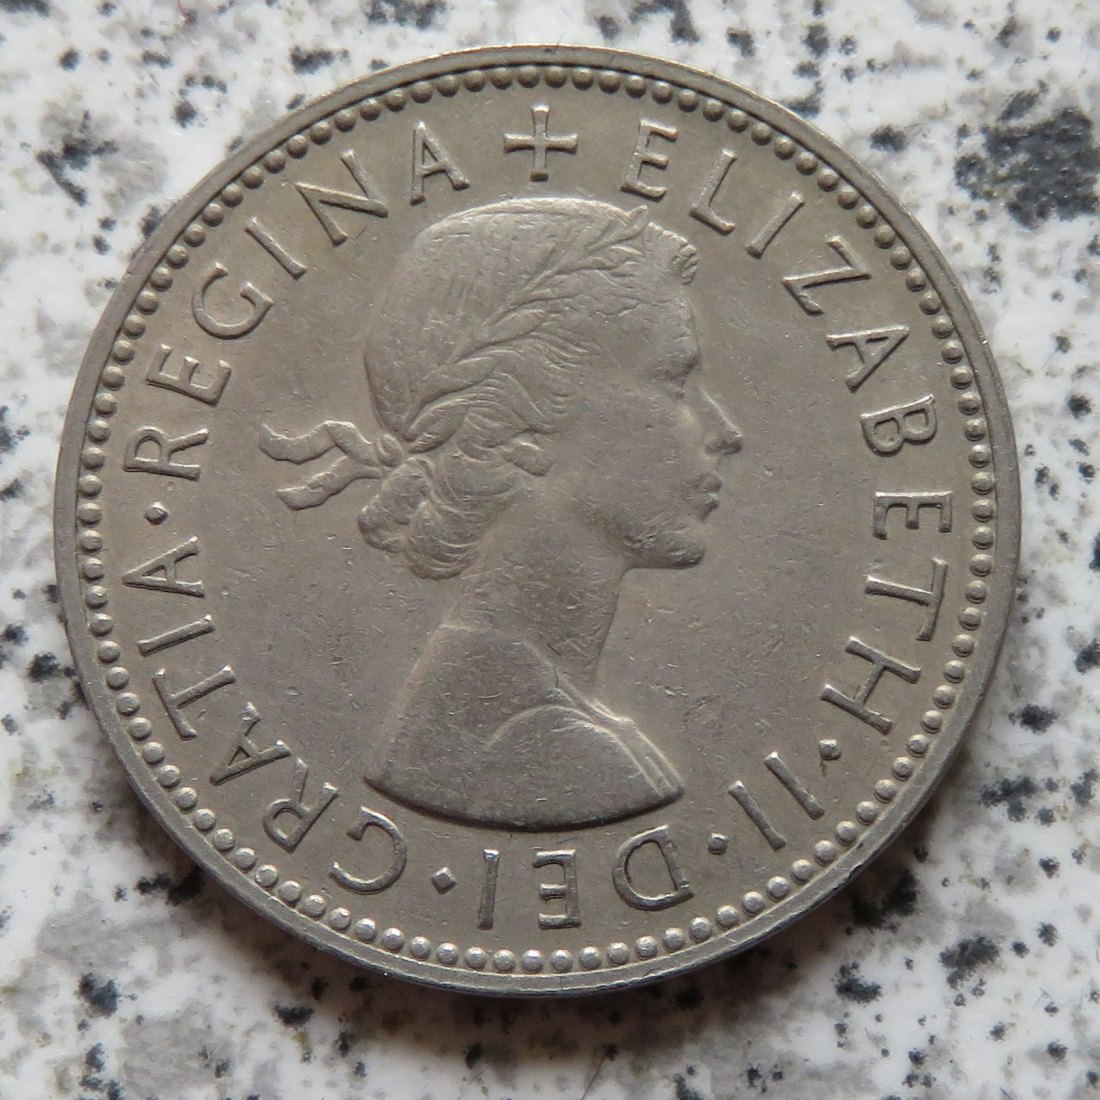  Großbritannien 1 Shilling 1956, Englisch (3)   